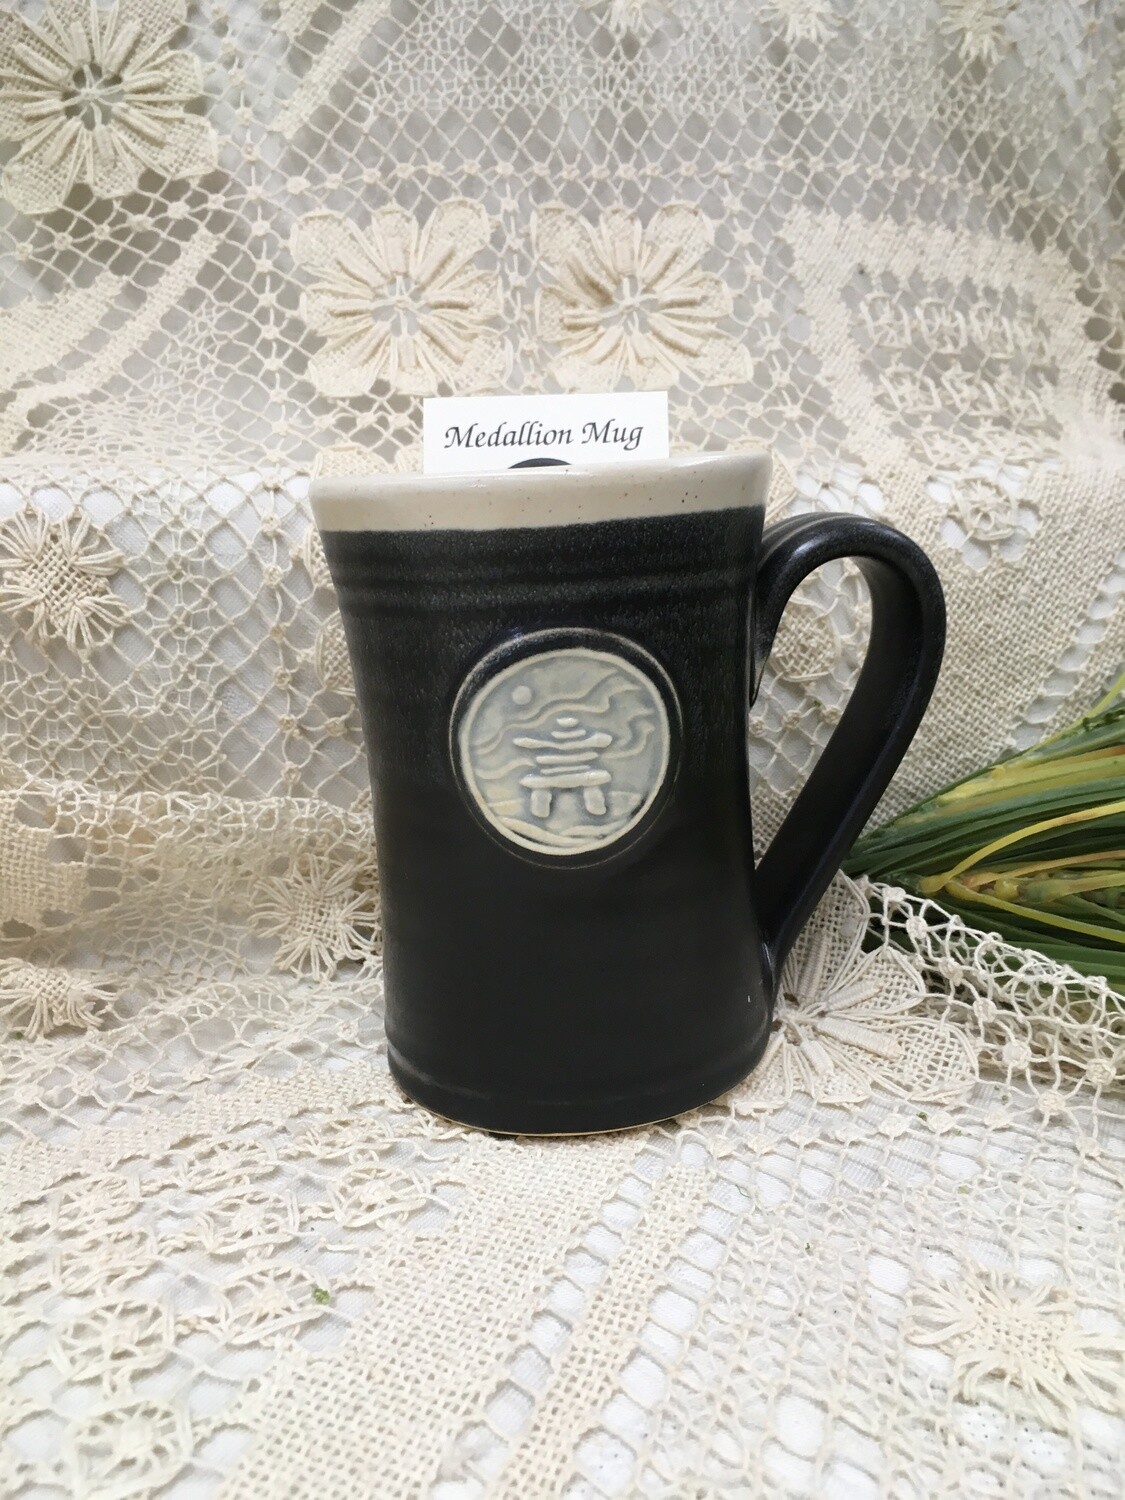 Medallion Large Mug, Inuksuk, Black & White  - Pavlo Pottery - Canadian Handmade